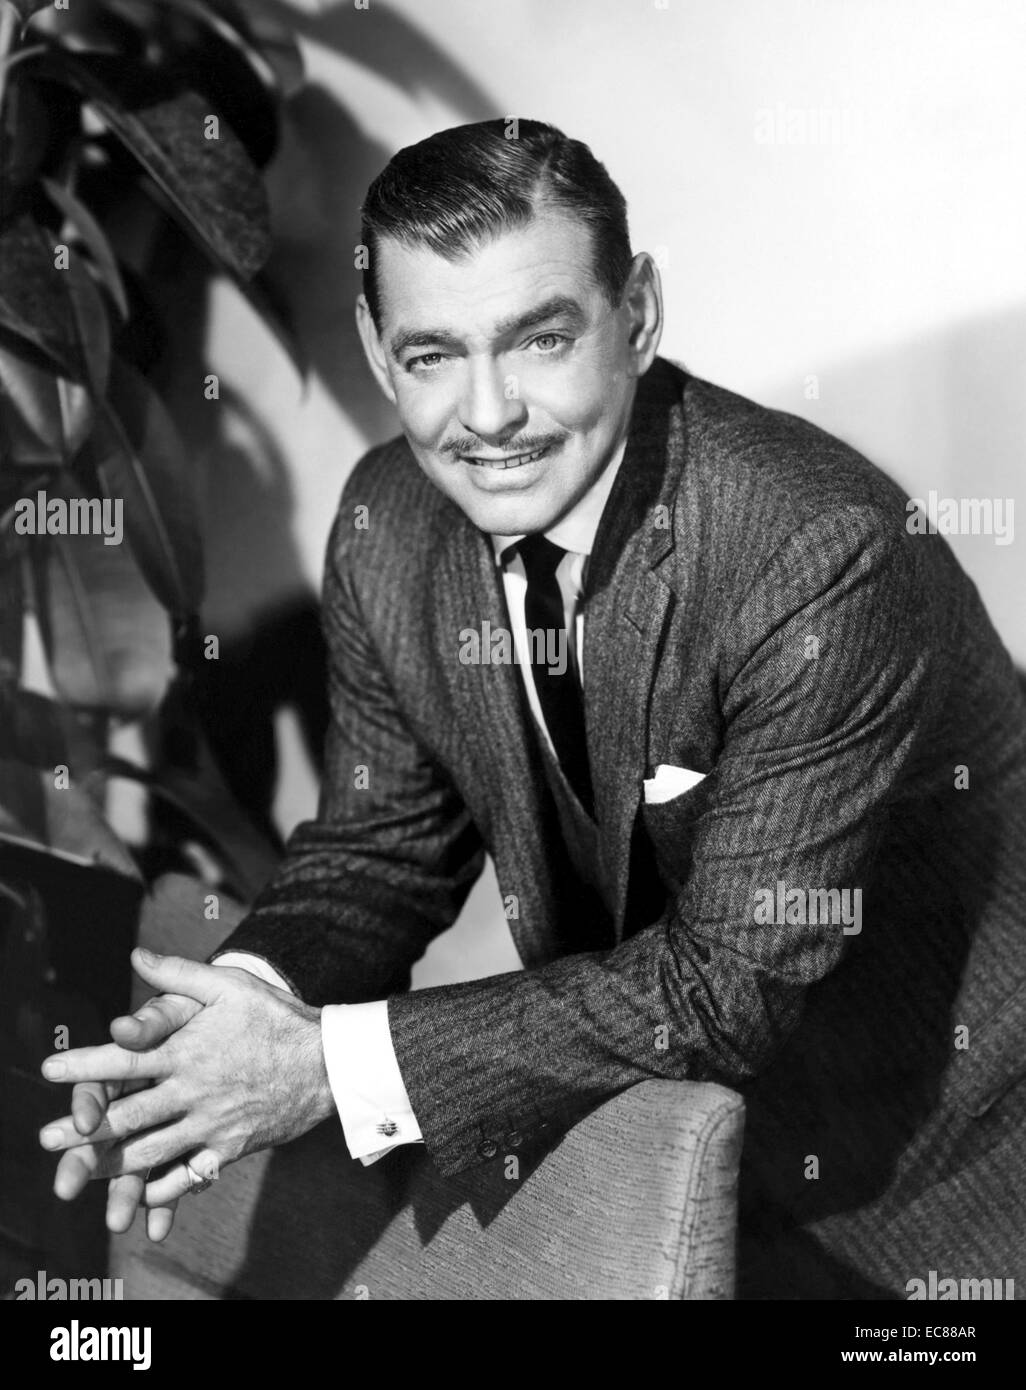 Fotografieren von Clark Gable (1901-1960), US-amerikanischer Schauspieler. Datierte 1950 Stockfoto